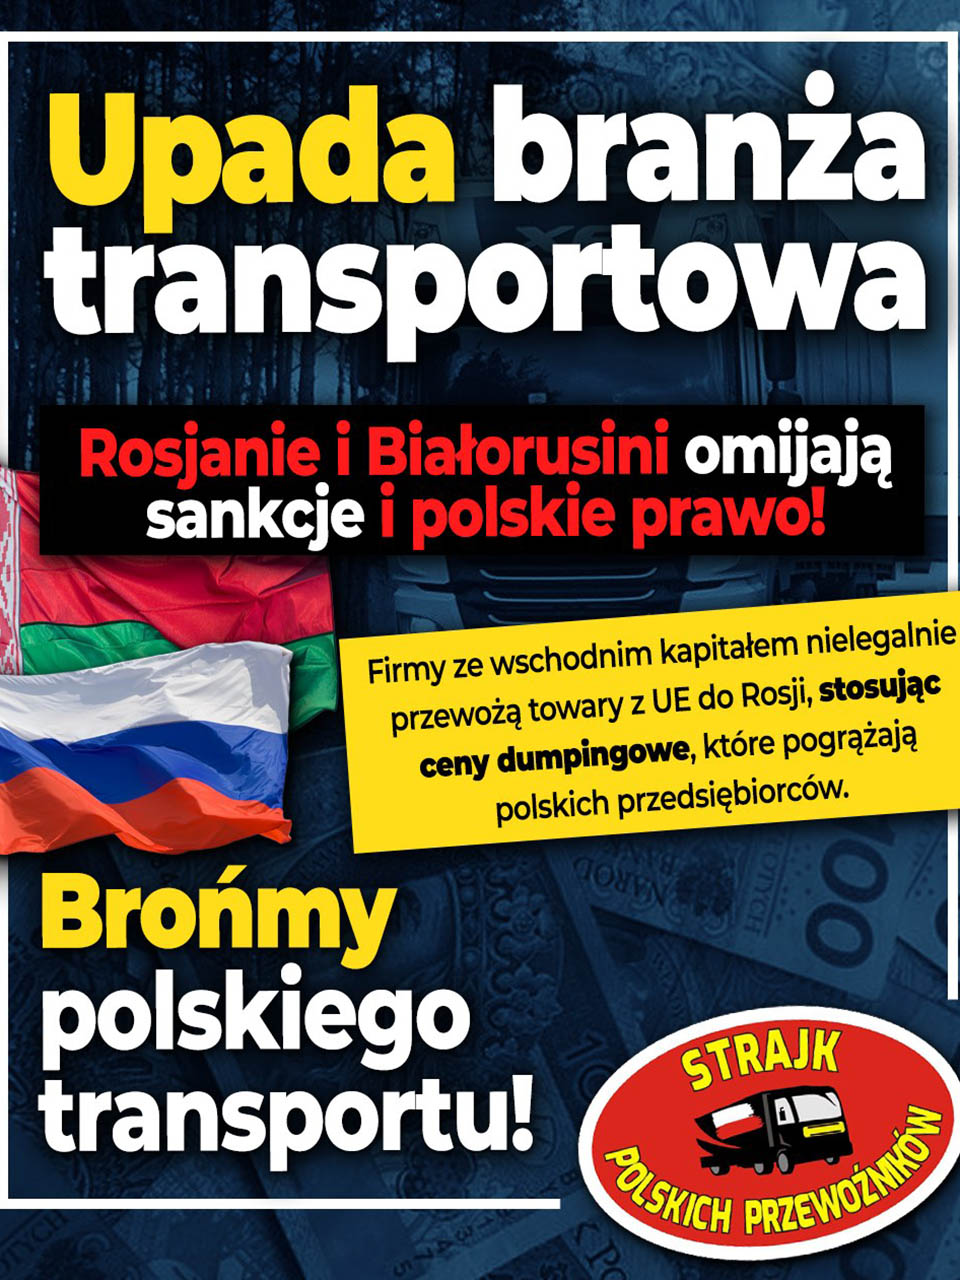 польские транспортники забастовка из-за беларусов